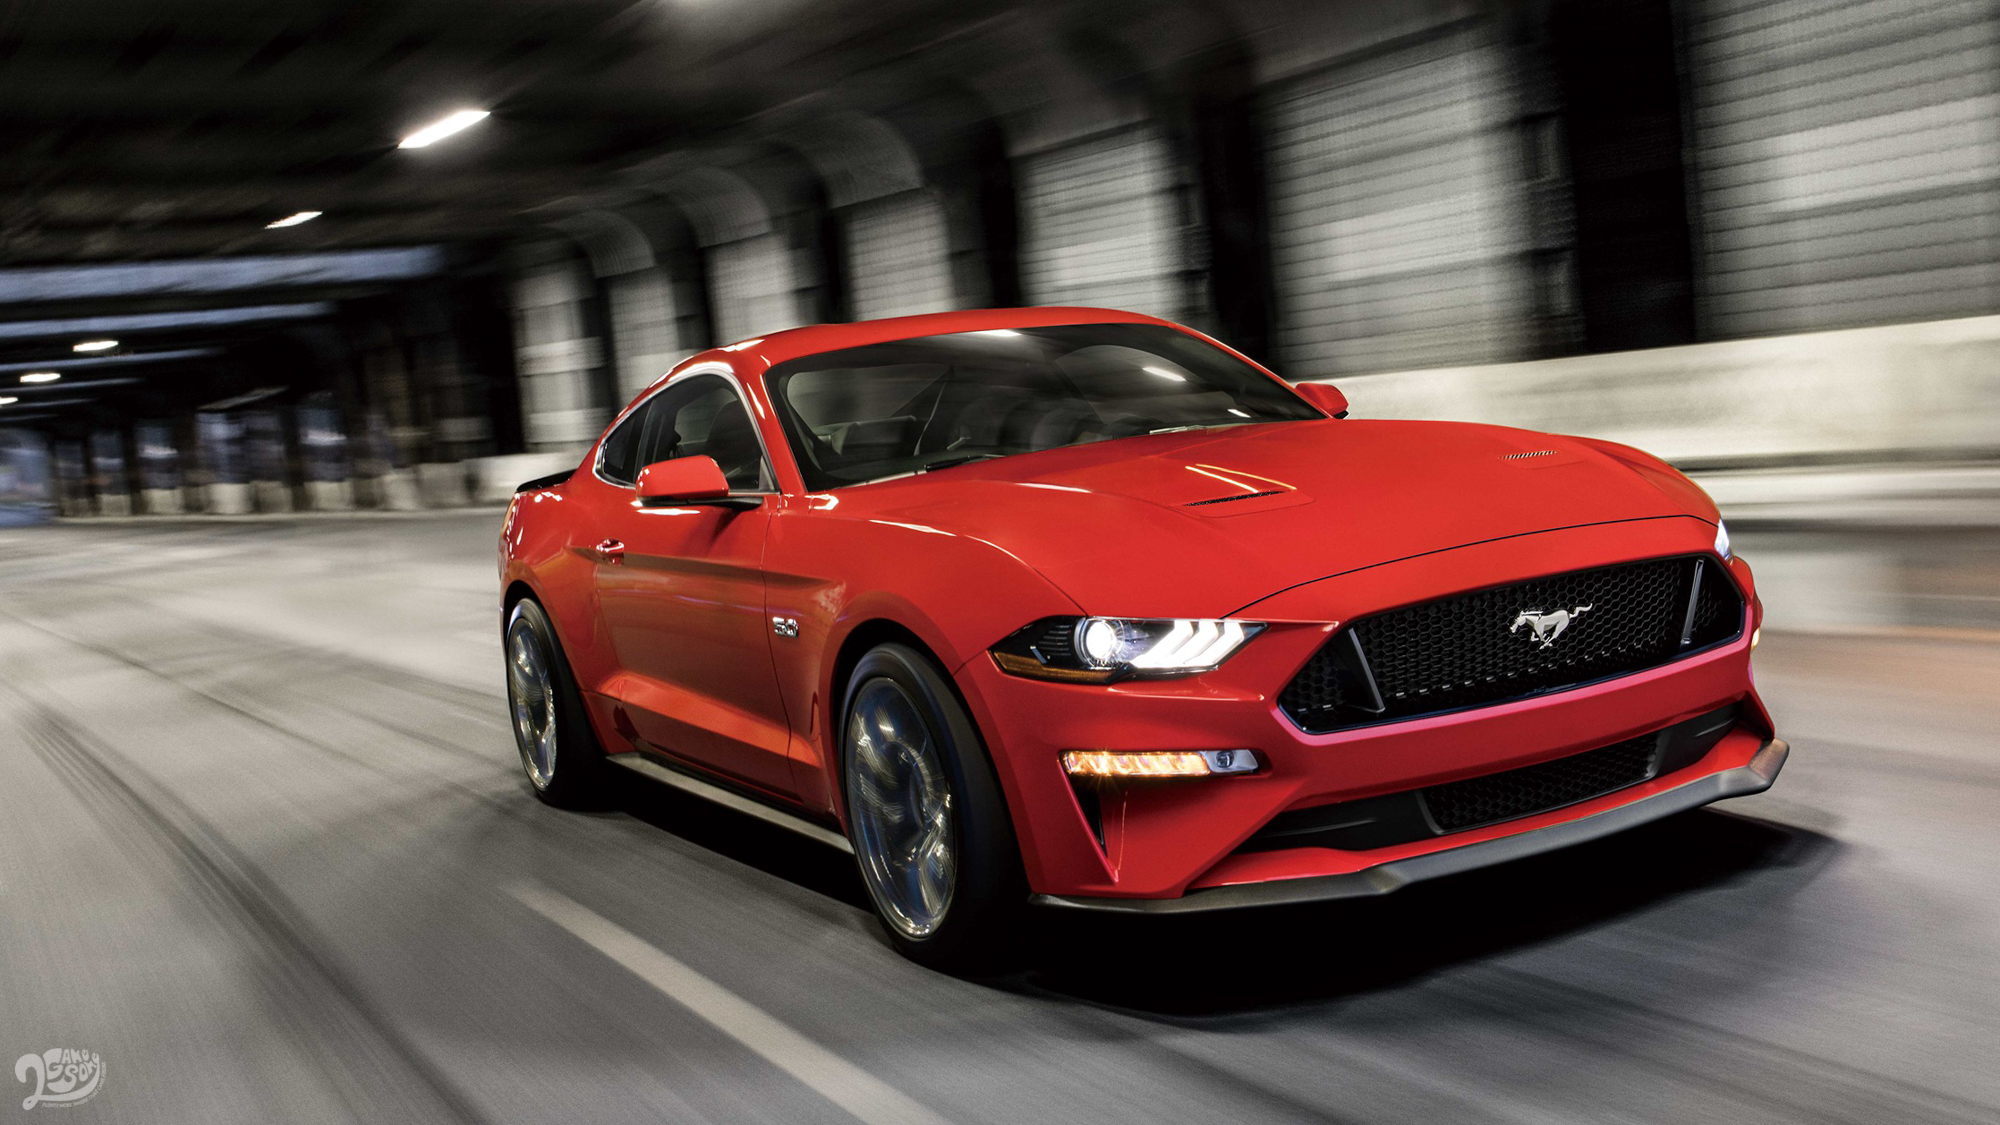 Ford Mustang 連續 7 年蟬聯「全球雙門跑車銷售冠軍」